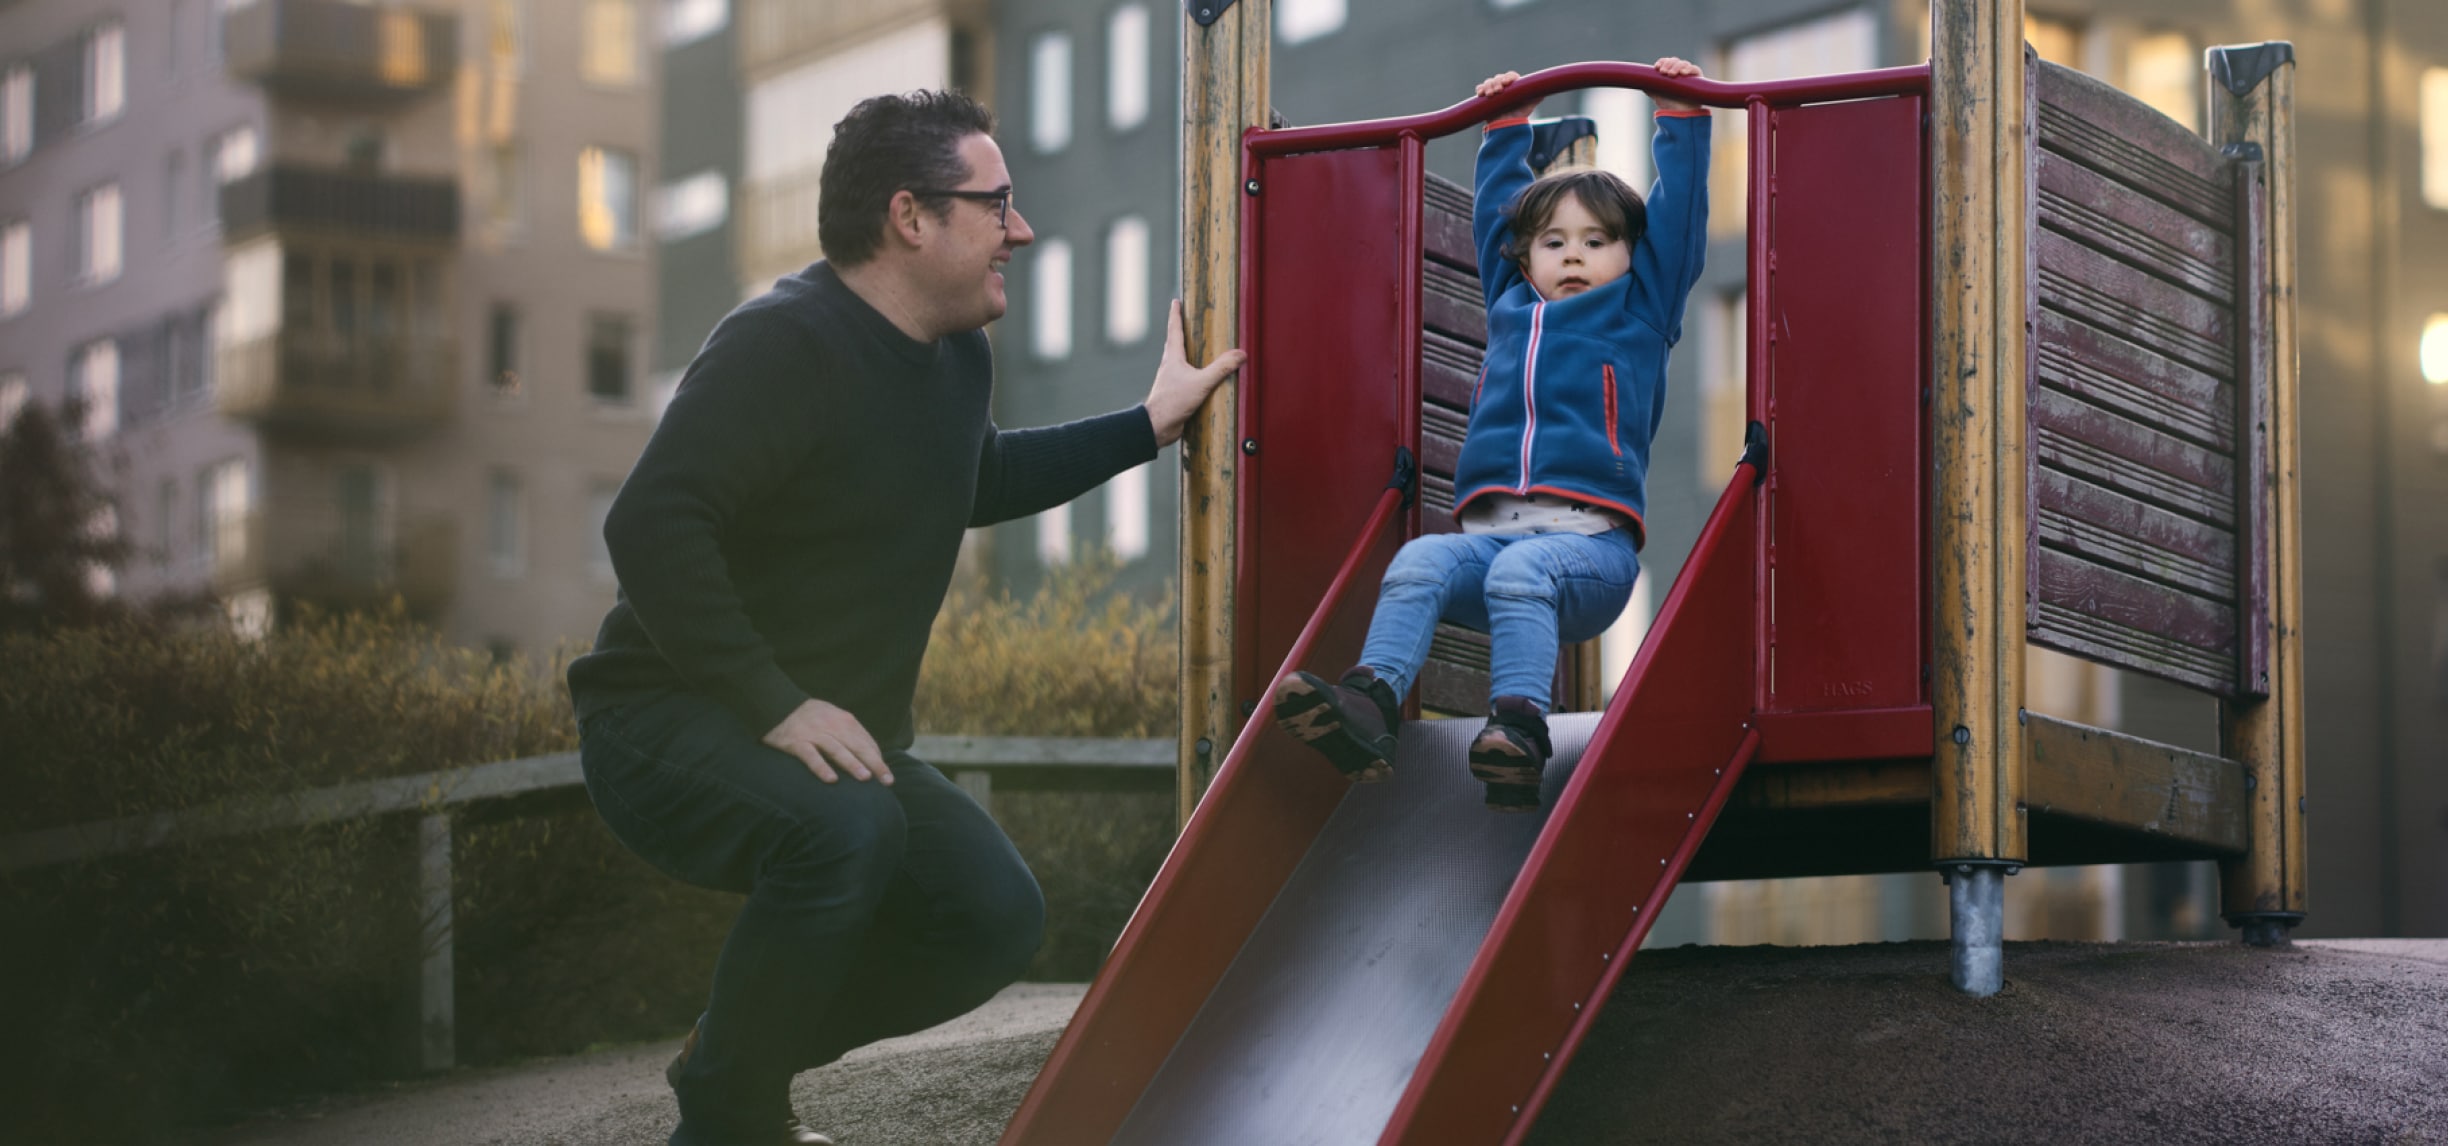 Ein Mann lächelt ein Kind an, das auf einem Spielplatz eine Rutsche herunterrutscht.